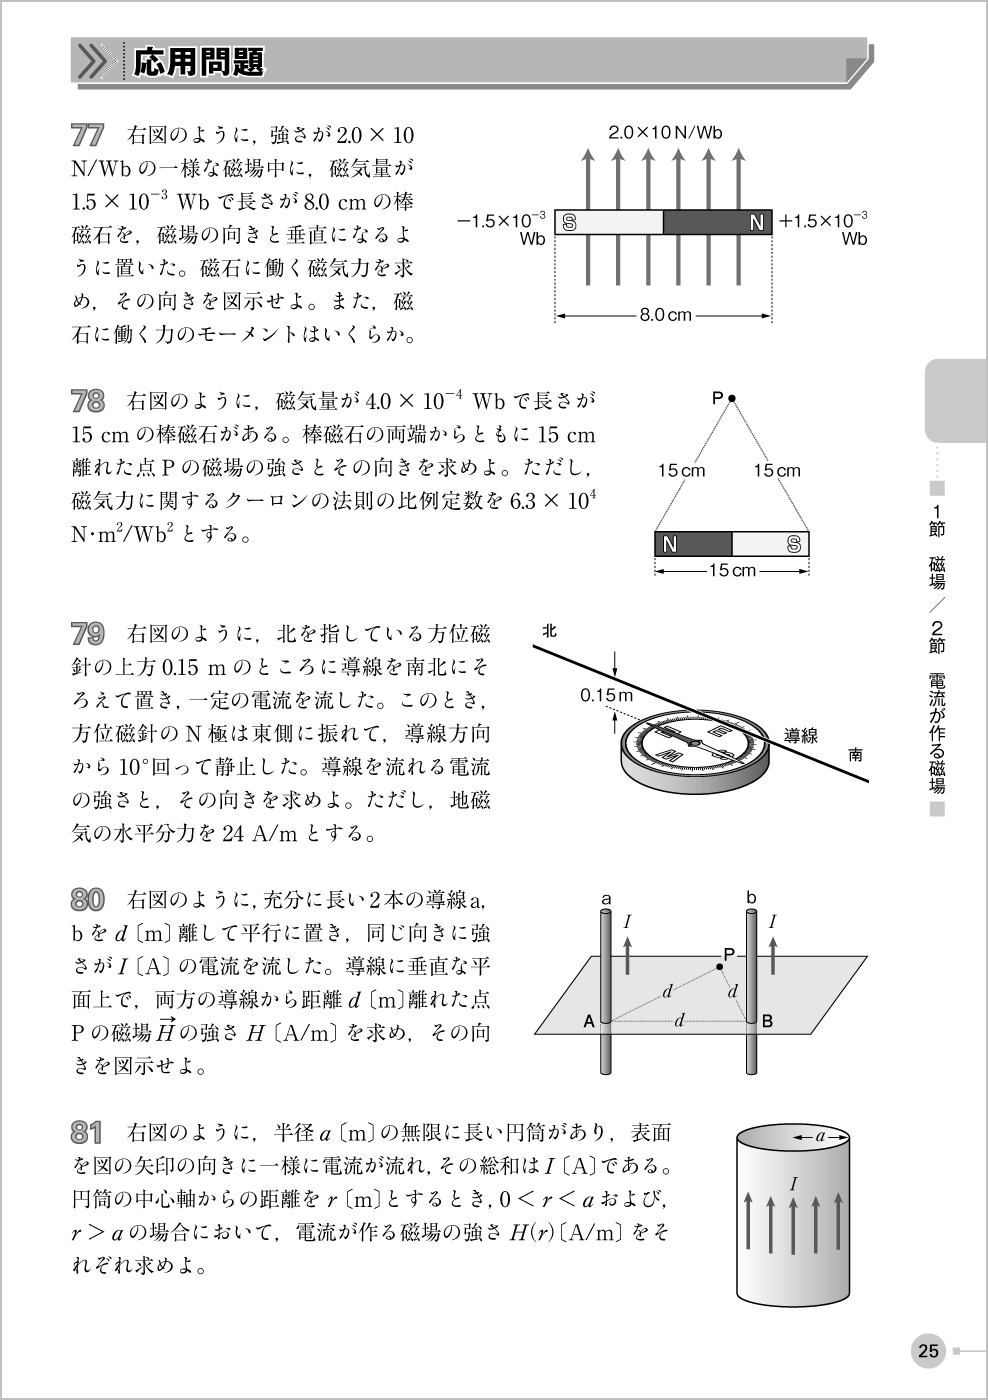 電磁気・原子問題集 p.25